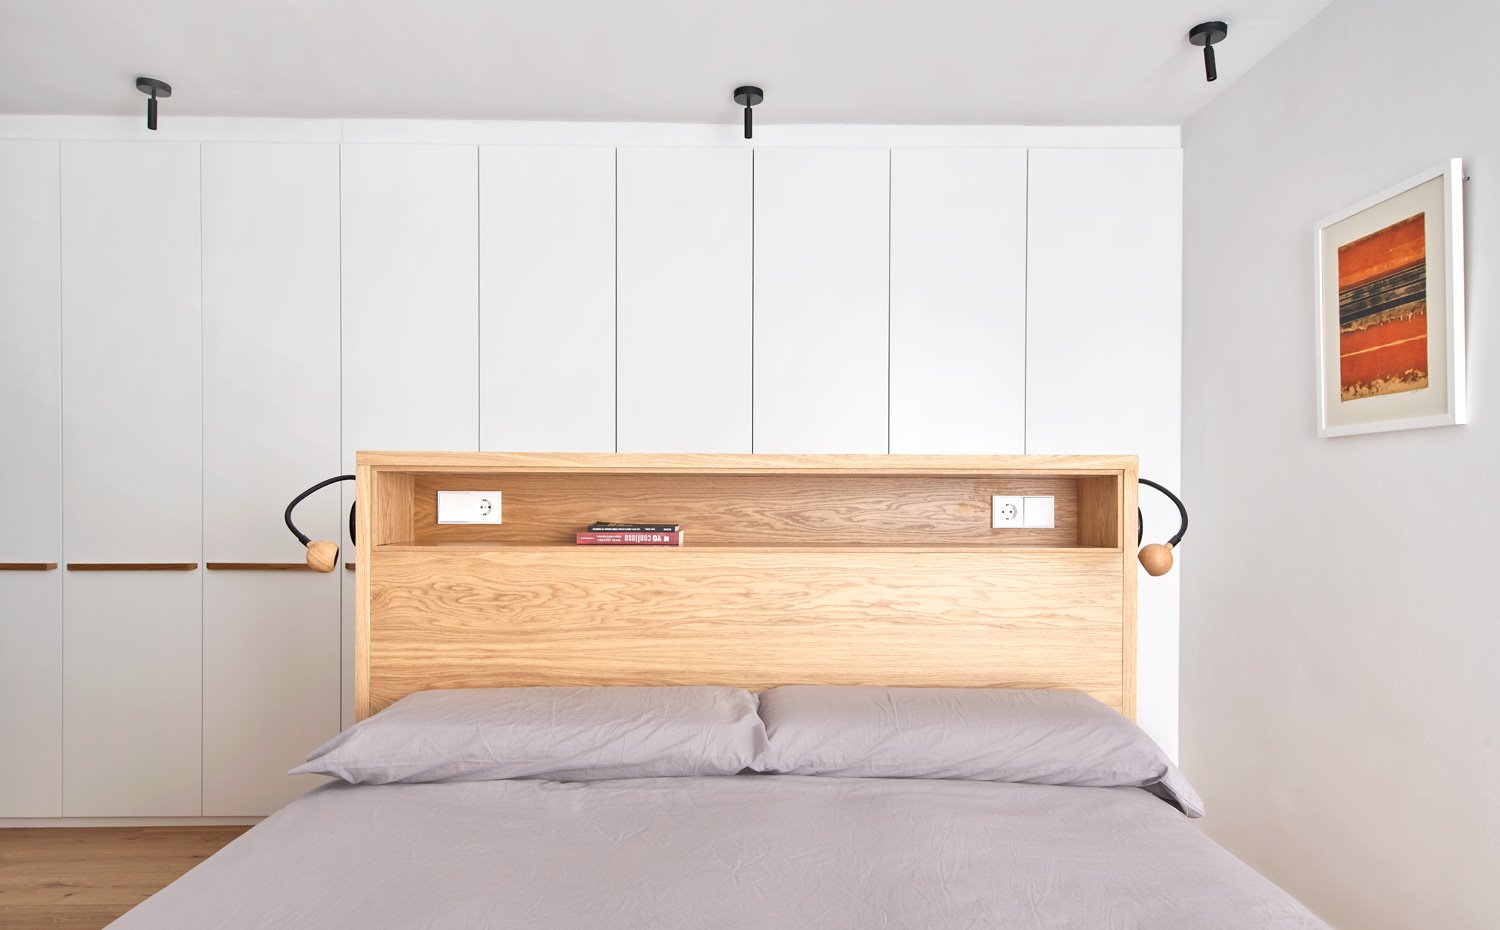 Dormitorio con cama central y amplio frente de armarios de almacenaje en pared en blanco, con tiradores en madera